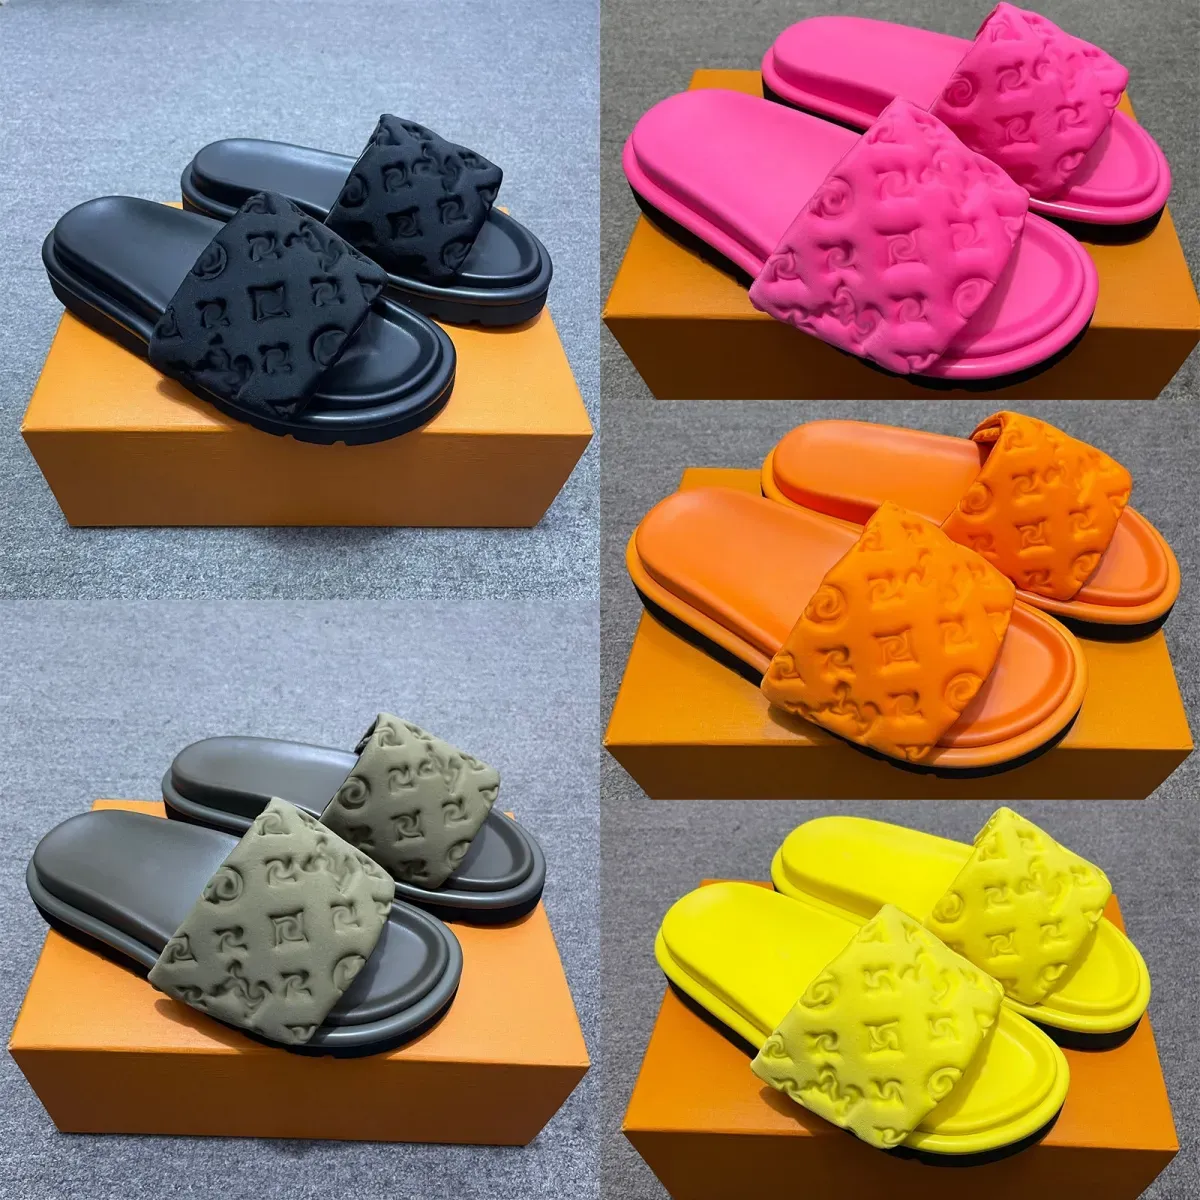 Toppkvalitet Casual Shoes Herrkvinnor tofflor Slides Hotel Shower Summer Beach Khaki Black White Sandals för Flat House Platform Women